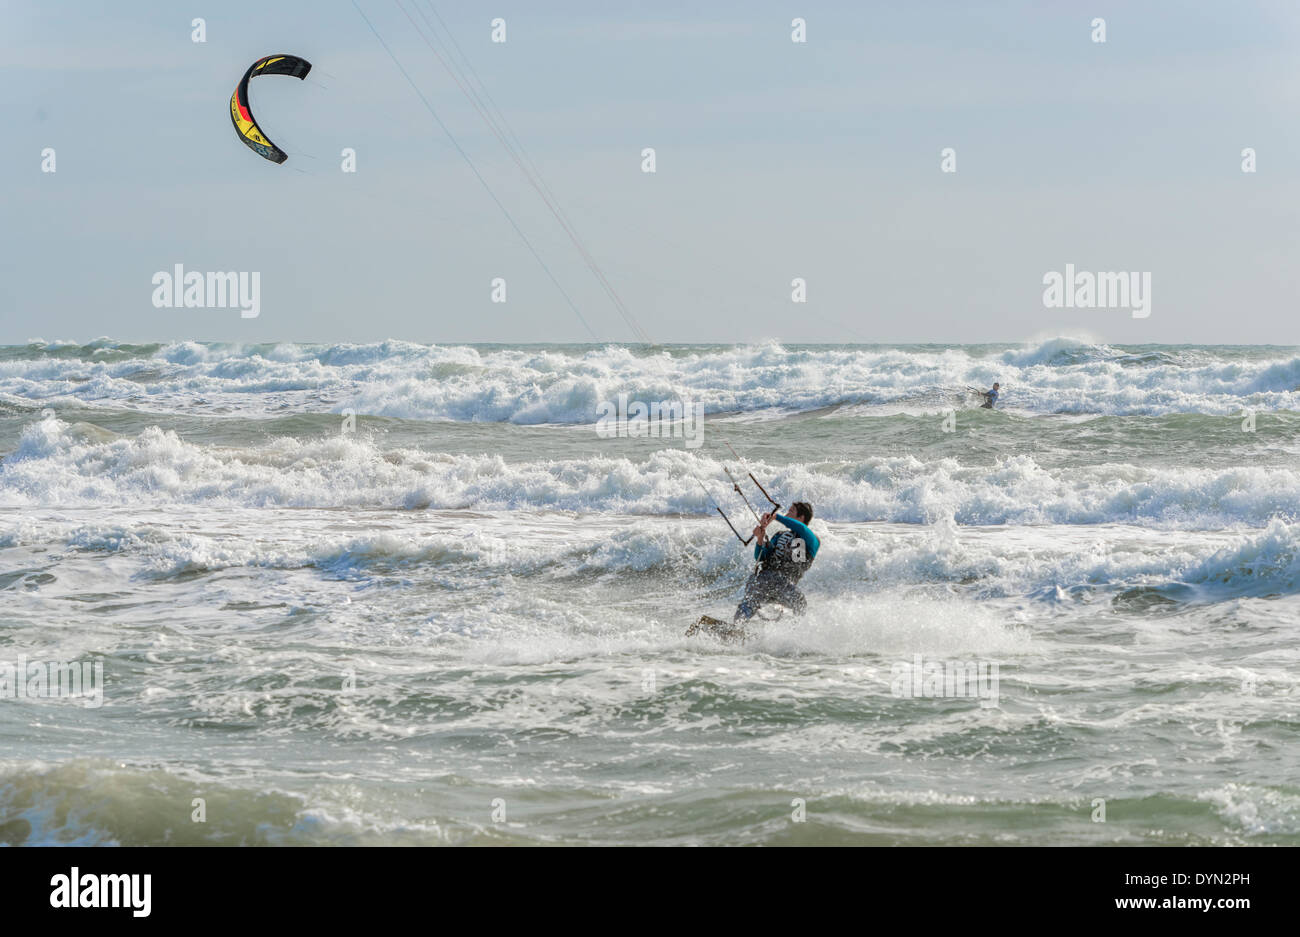 Barcellona, Spagna - 8 Febbraio 2014: Le persone sono il kite surf su una soleggiata giornata invernale in spiagge di Barcellona il 8 febbraio 2014 Foto Stock